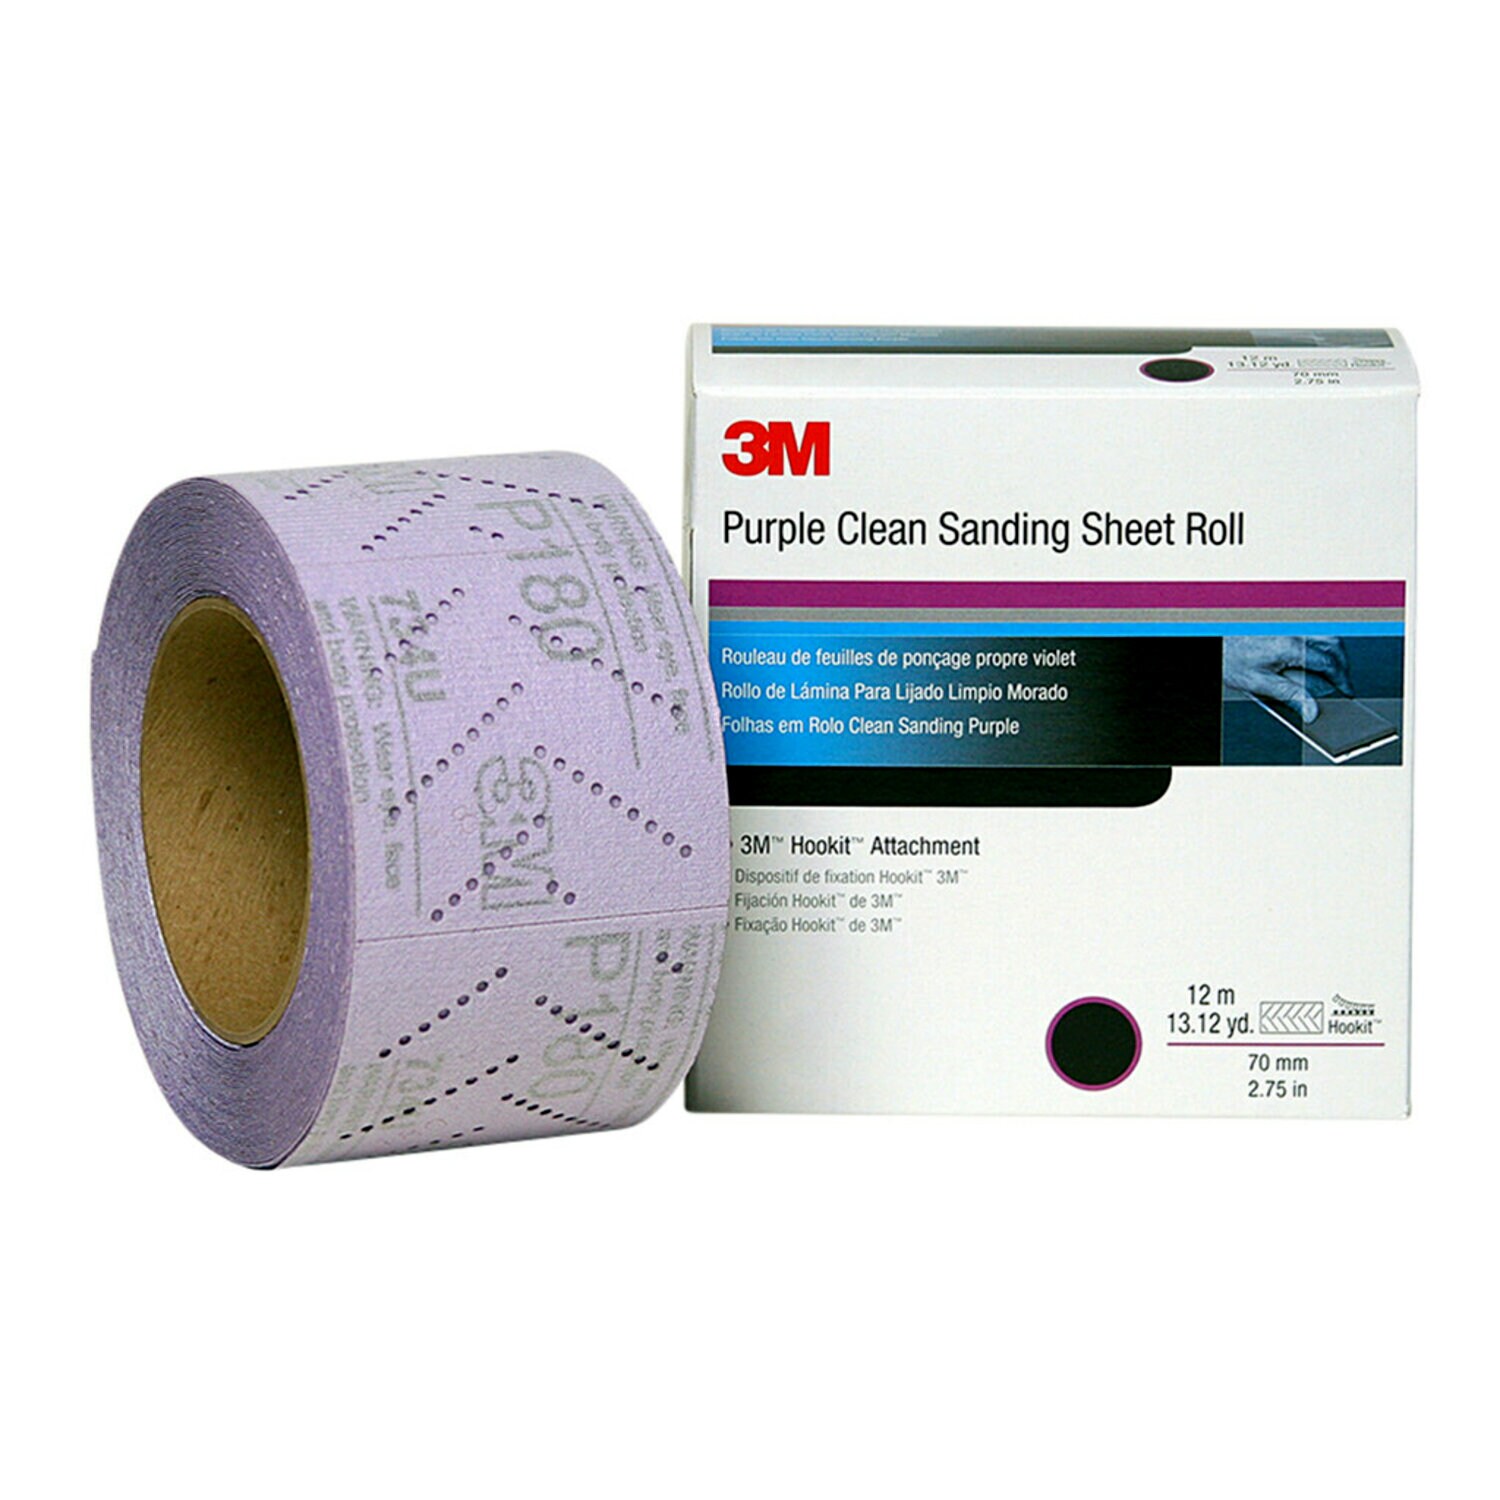 7100010896 - 3M Hookit Purple Clean Sanding Sheet Roll 334U, 30700, P800, 70 mm x
12 m, 5 rolls per case